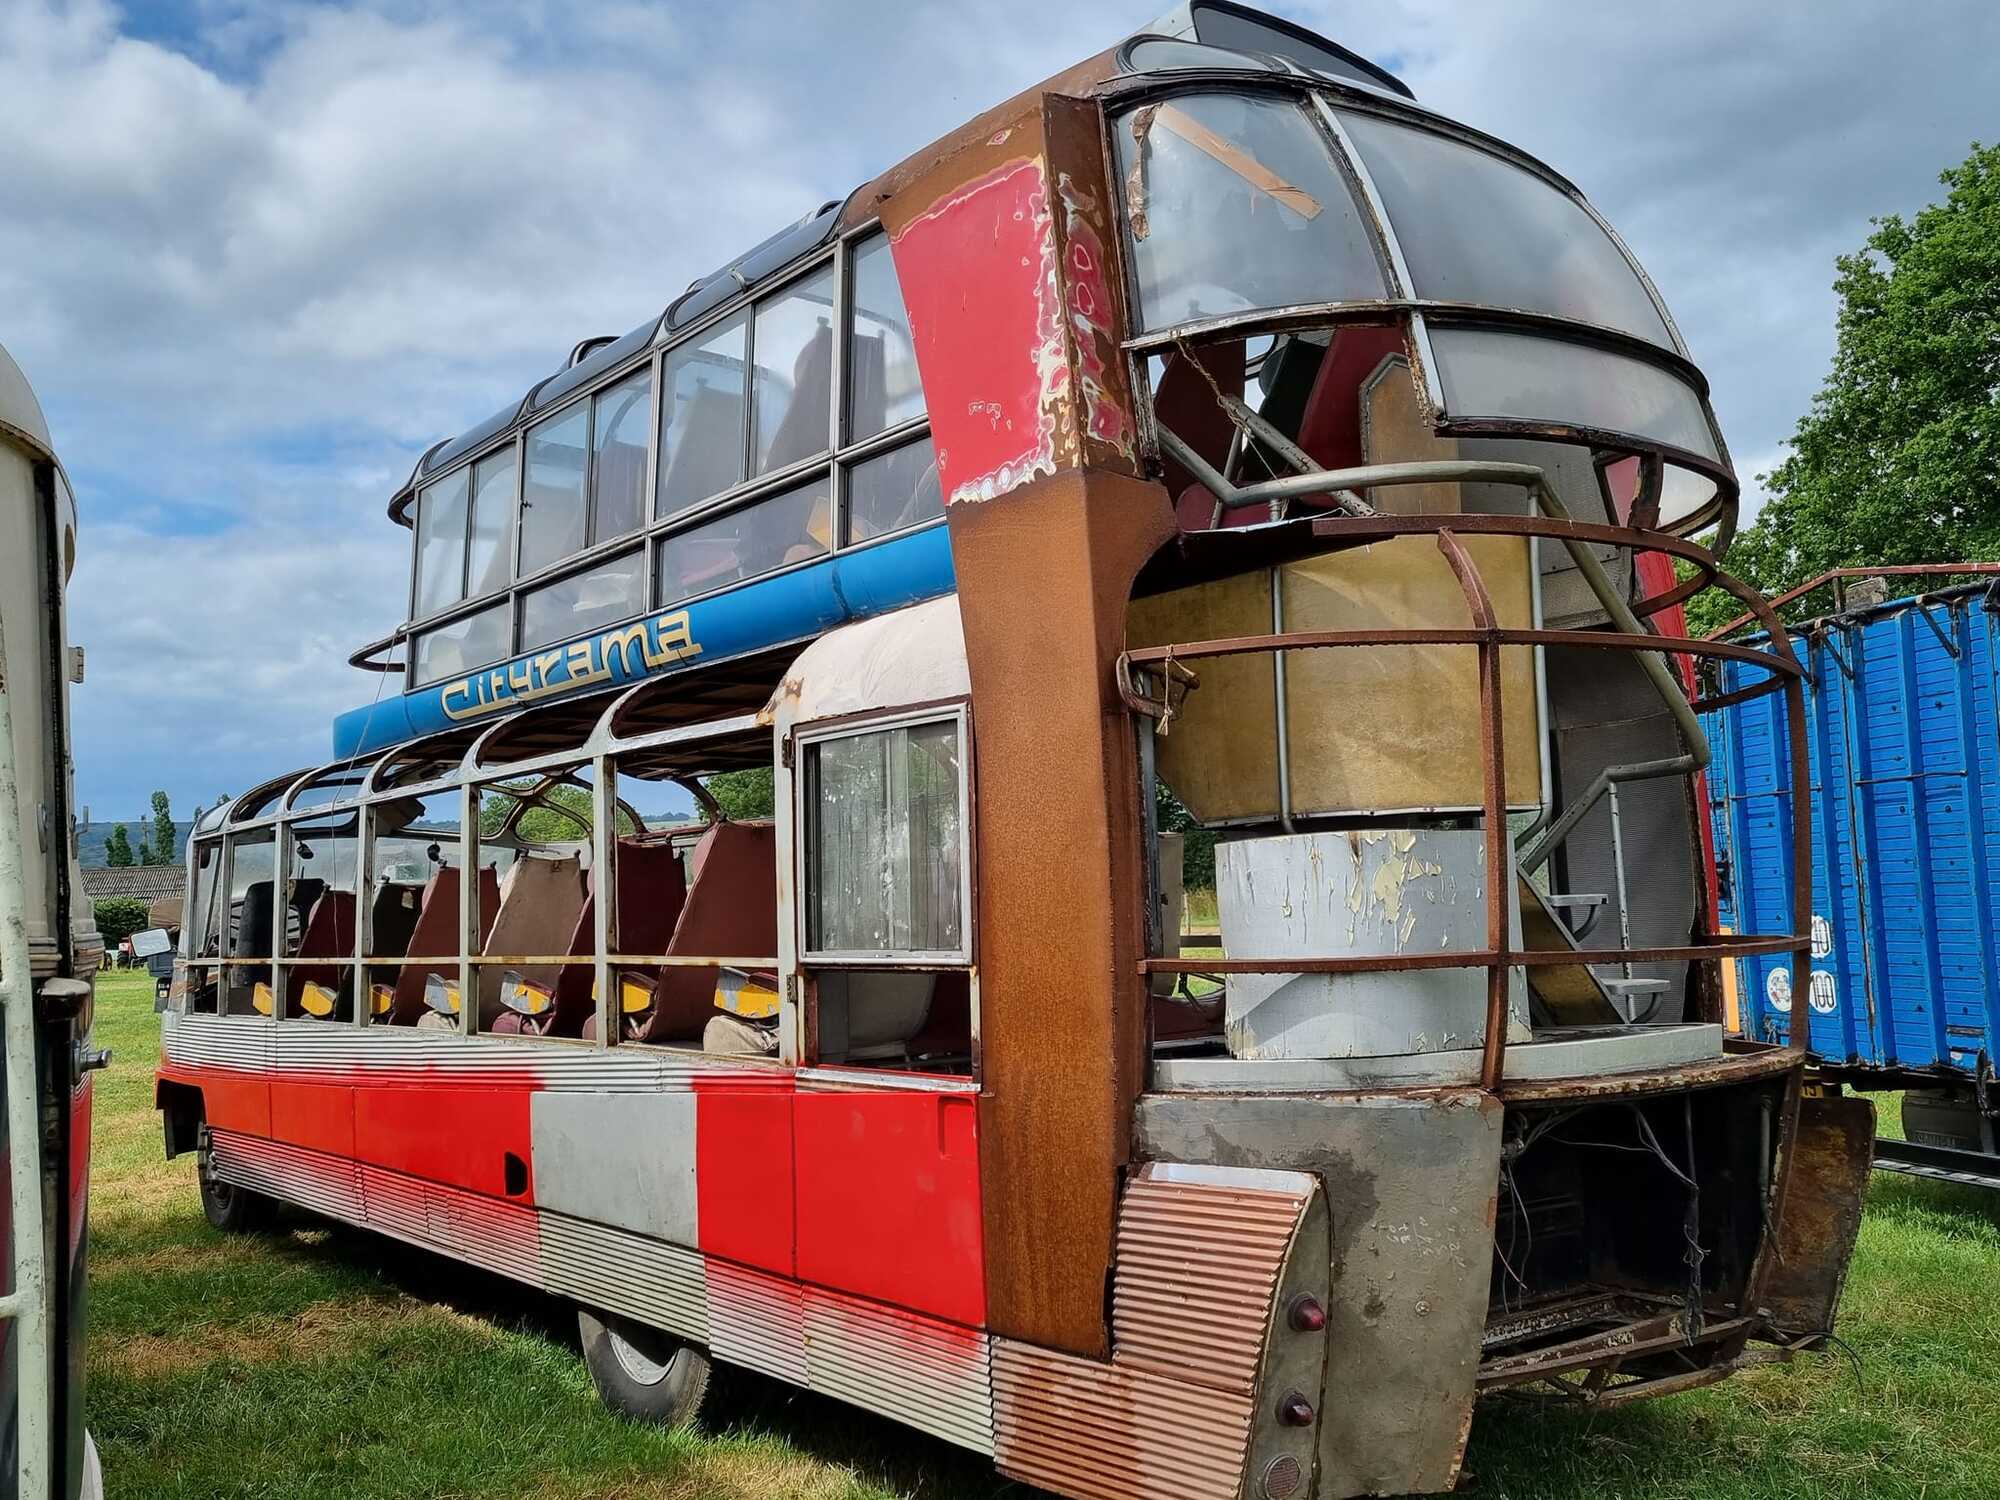 Время не пощадило автобус: большая часть стекол отсутствует, обширная ржавчина разъела кузов, не сохранились многие элементы интерьера